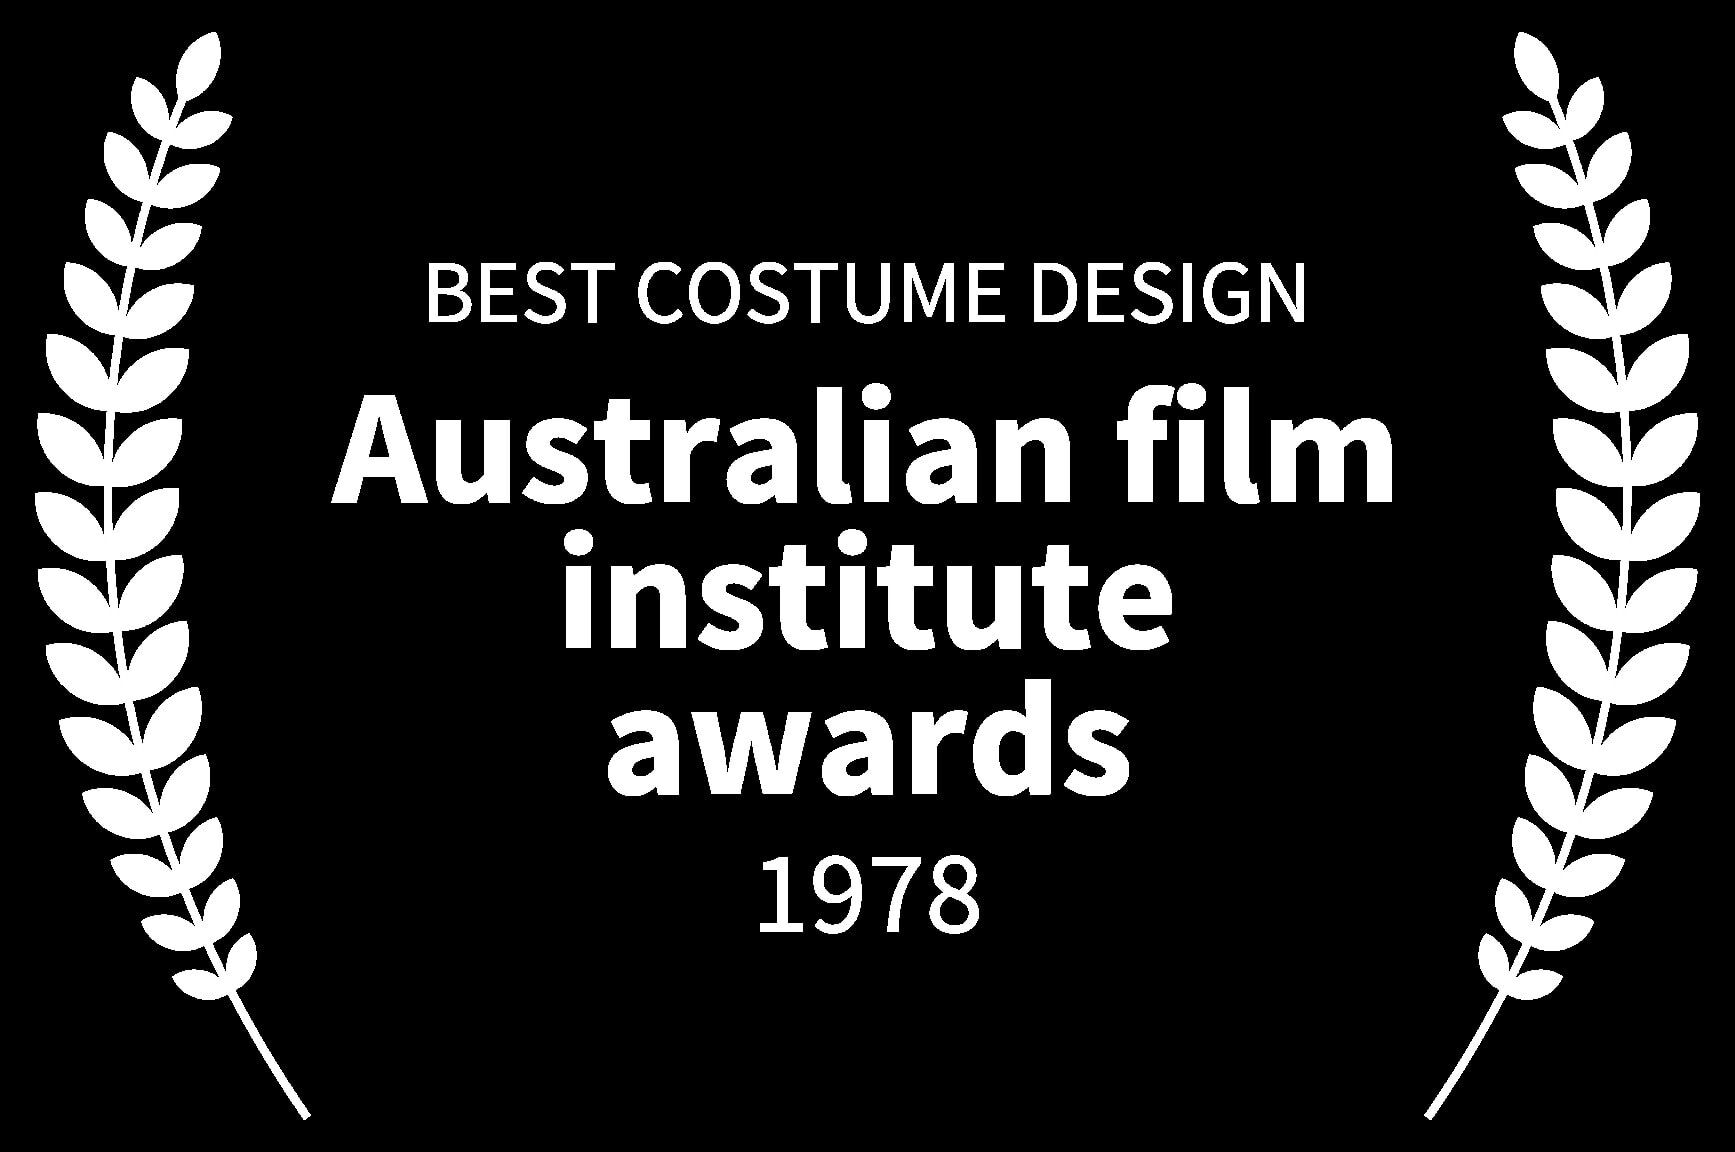 BEST COSTUME DESIGN - Australian film institute awards - 1978 - The Mango Tree